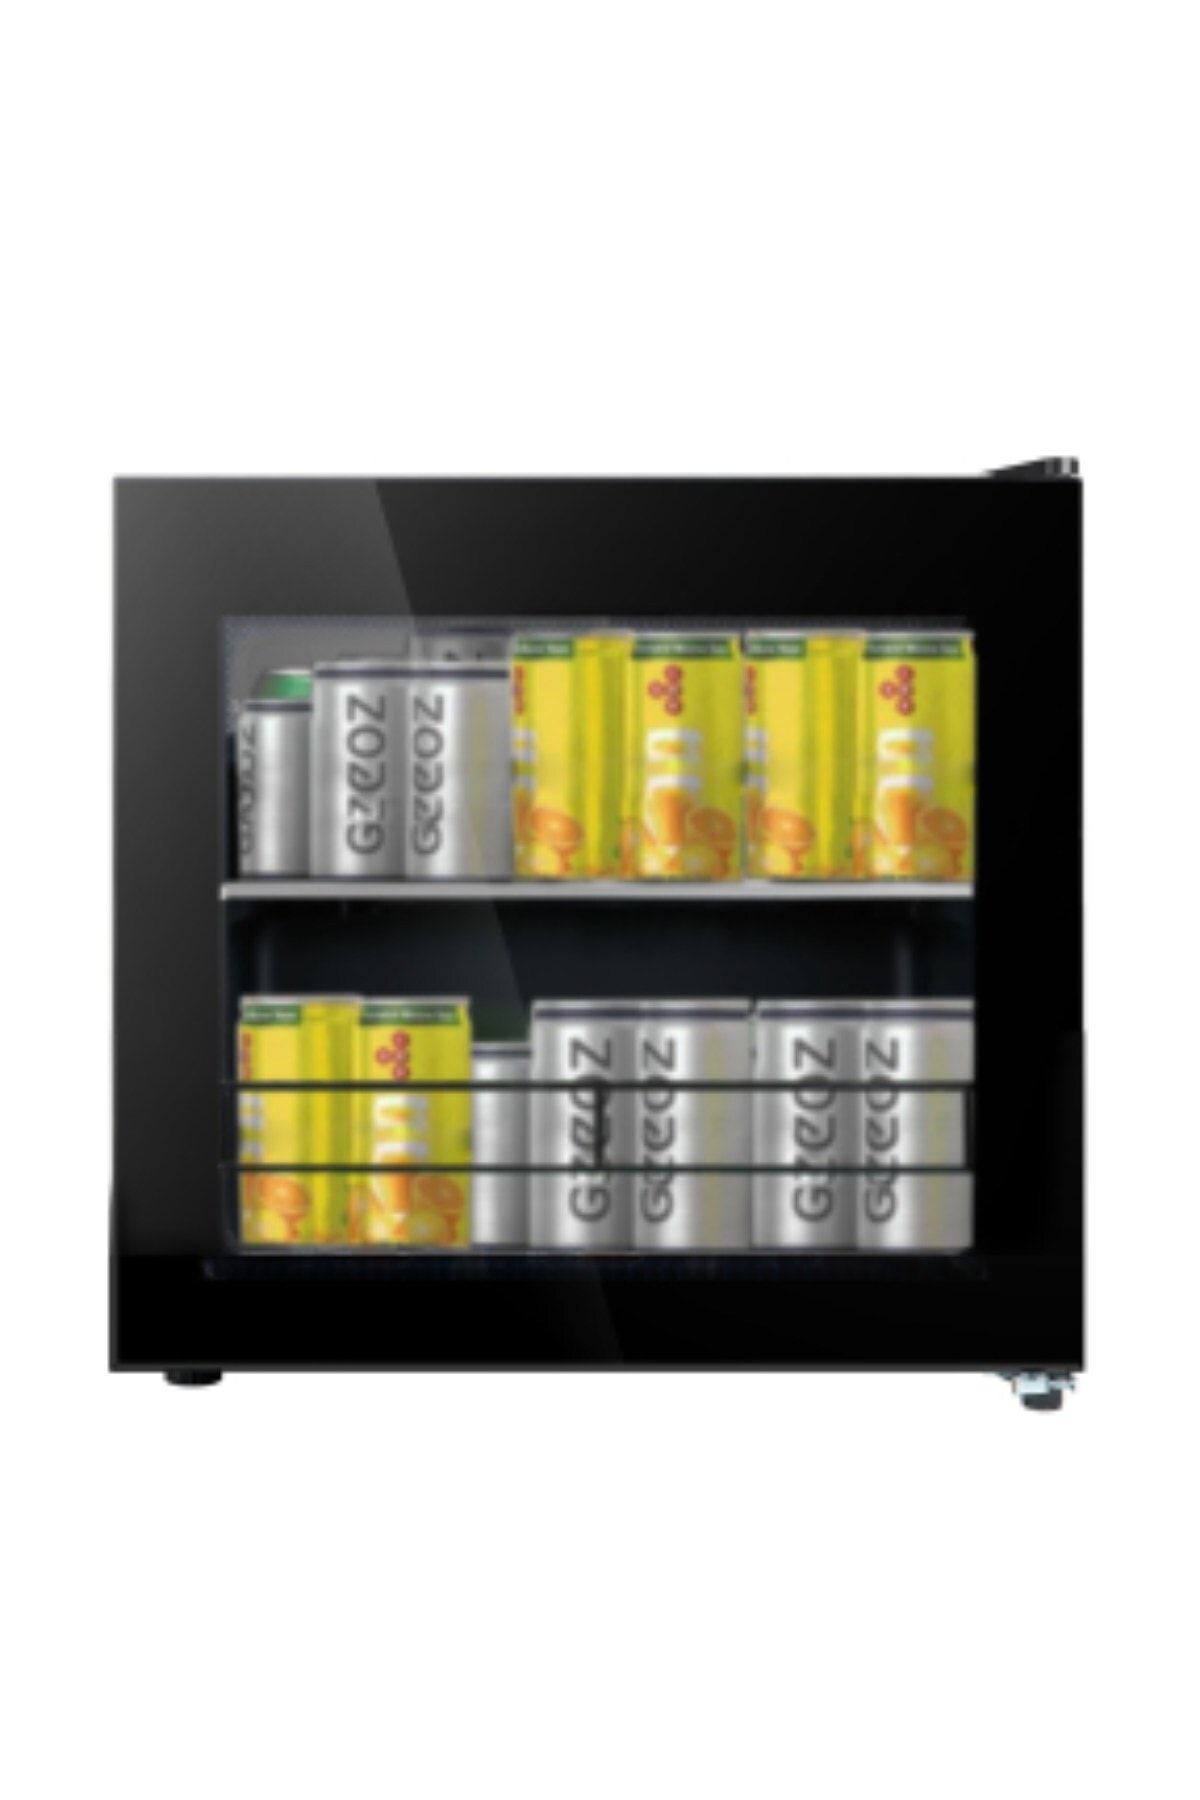 Dijitsu Dbm60 Kompresörlü Minibar Buzdolabı